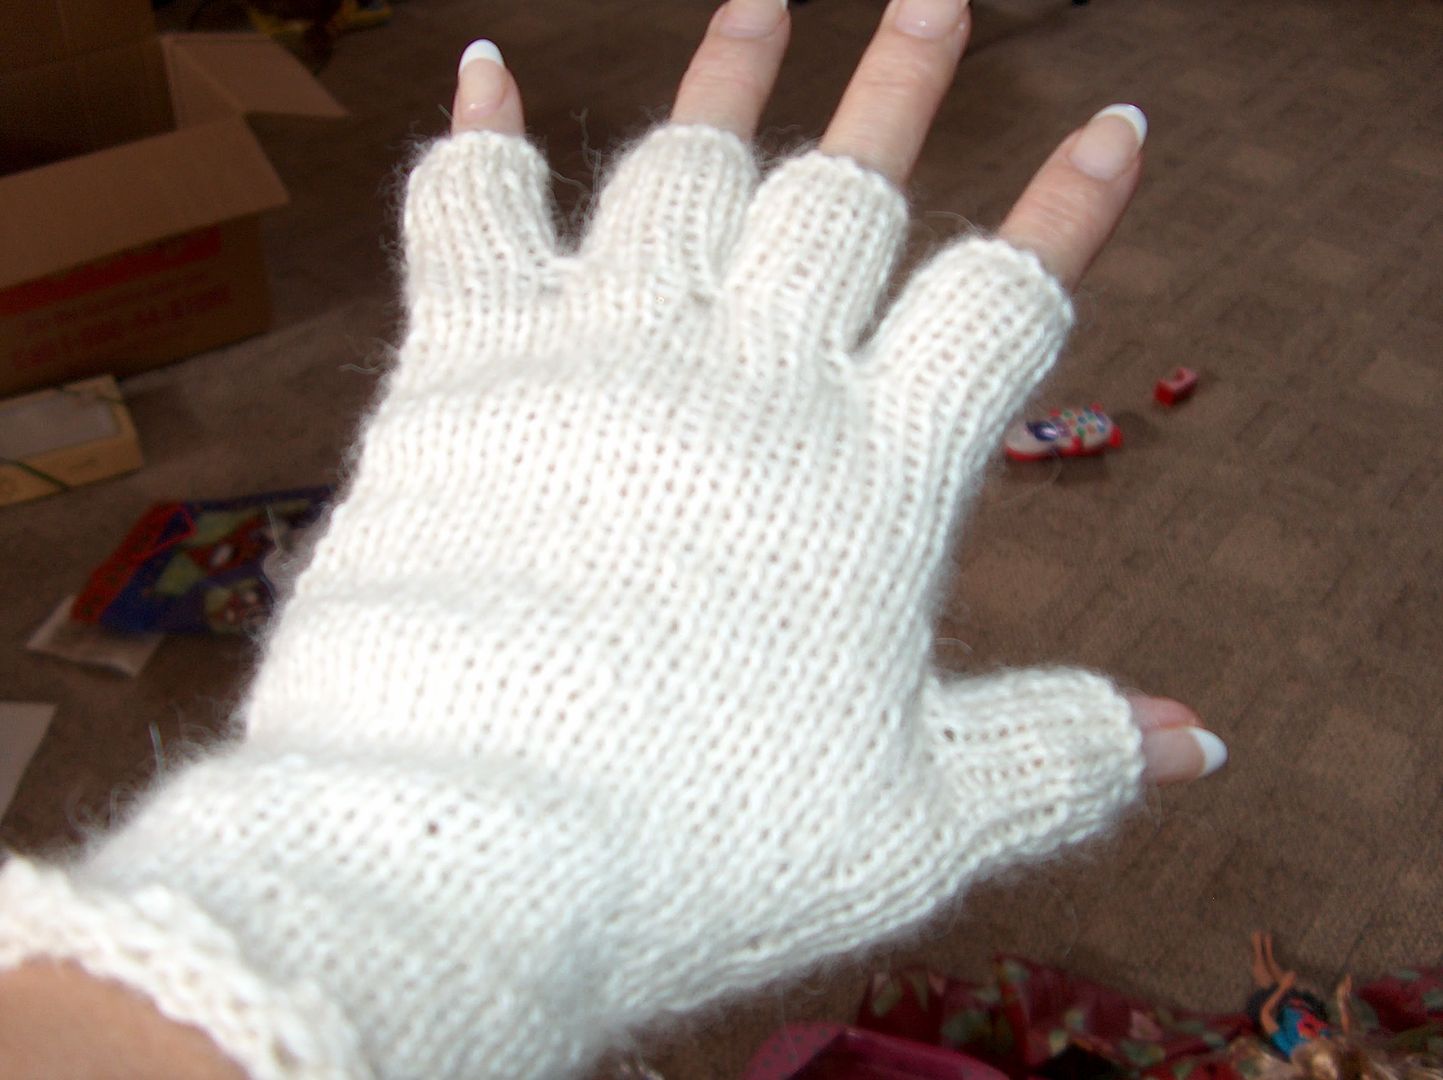 My gloves